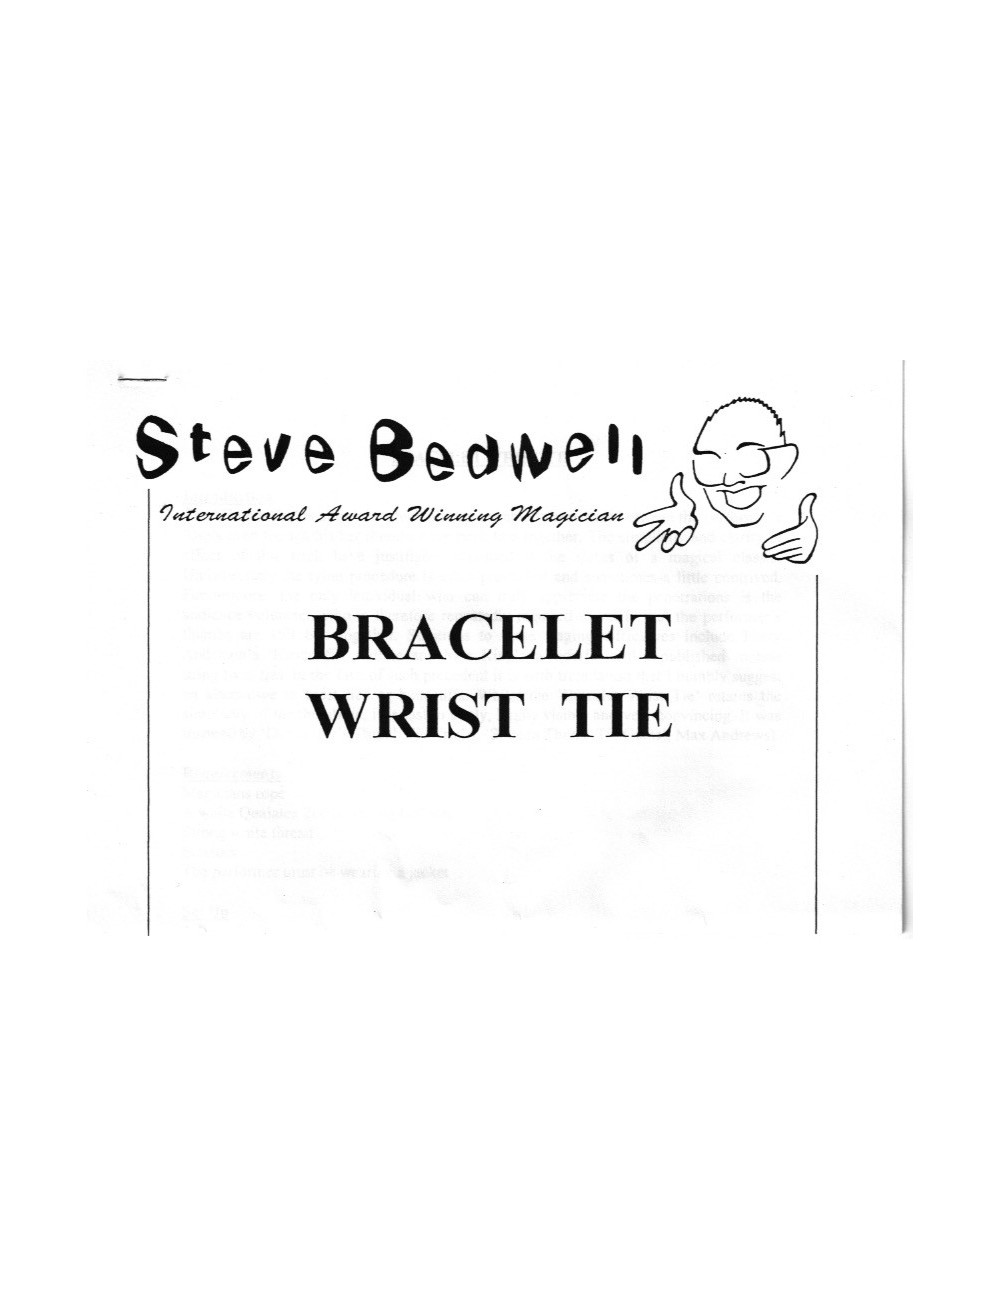 BRACELET WRIST TIE (STEVE BEDWELL)